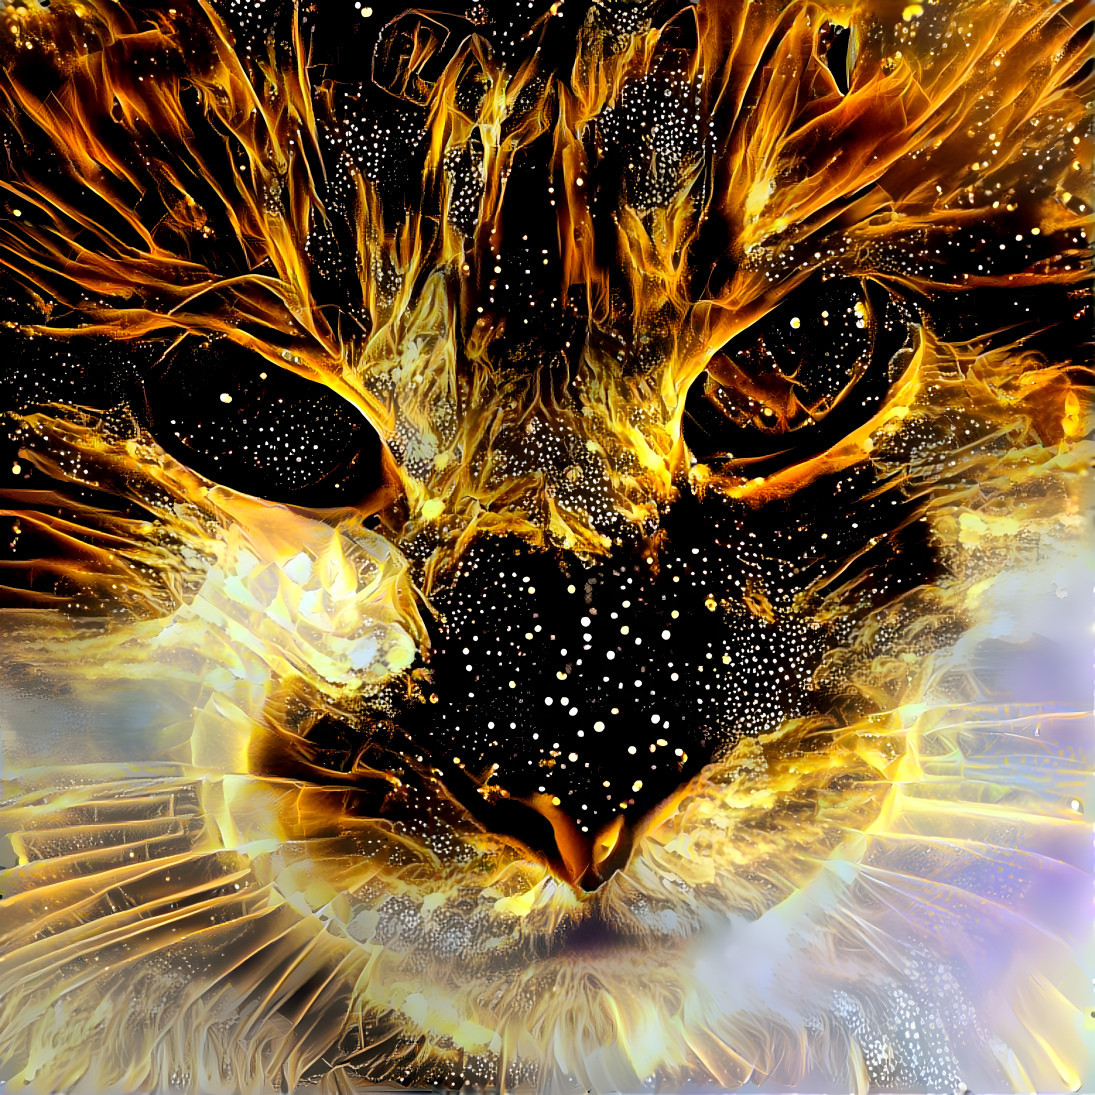 Fiery catface